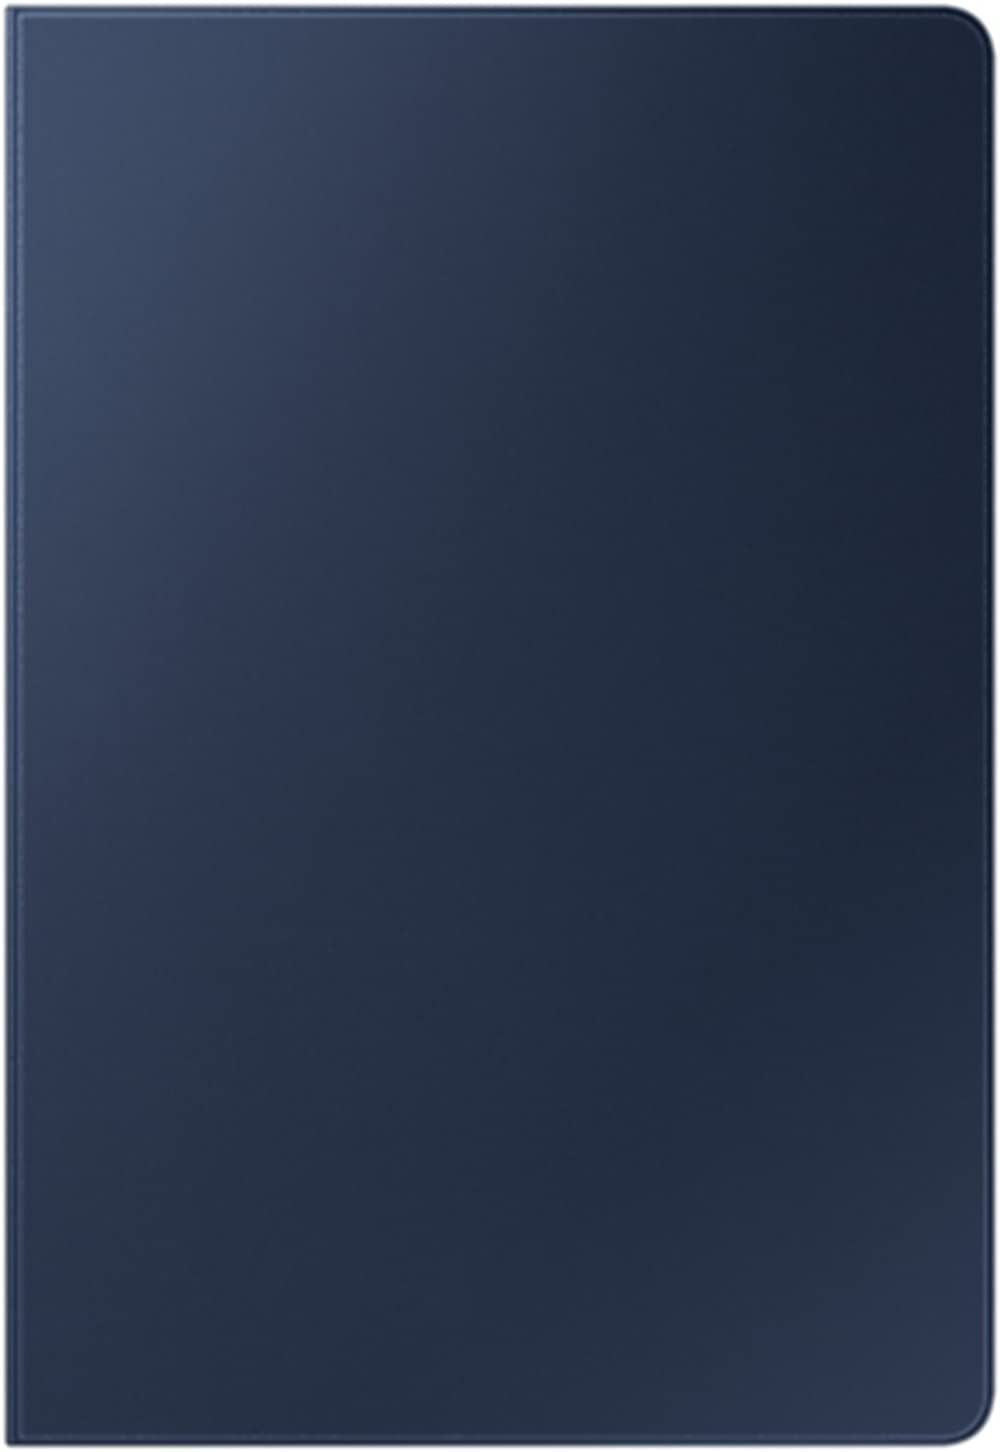 Official Samsung Galaxy Tab S7 Plus Book Cover Blue - EF-BT970PNEGWW